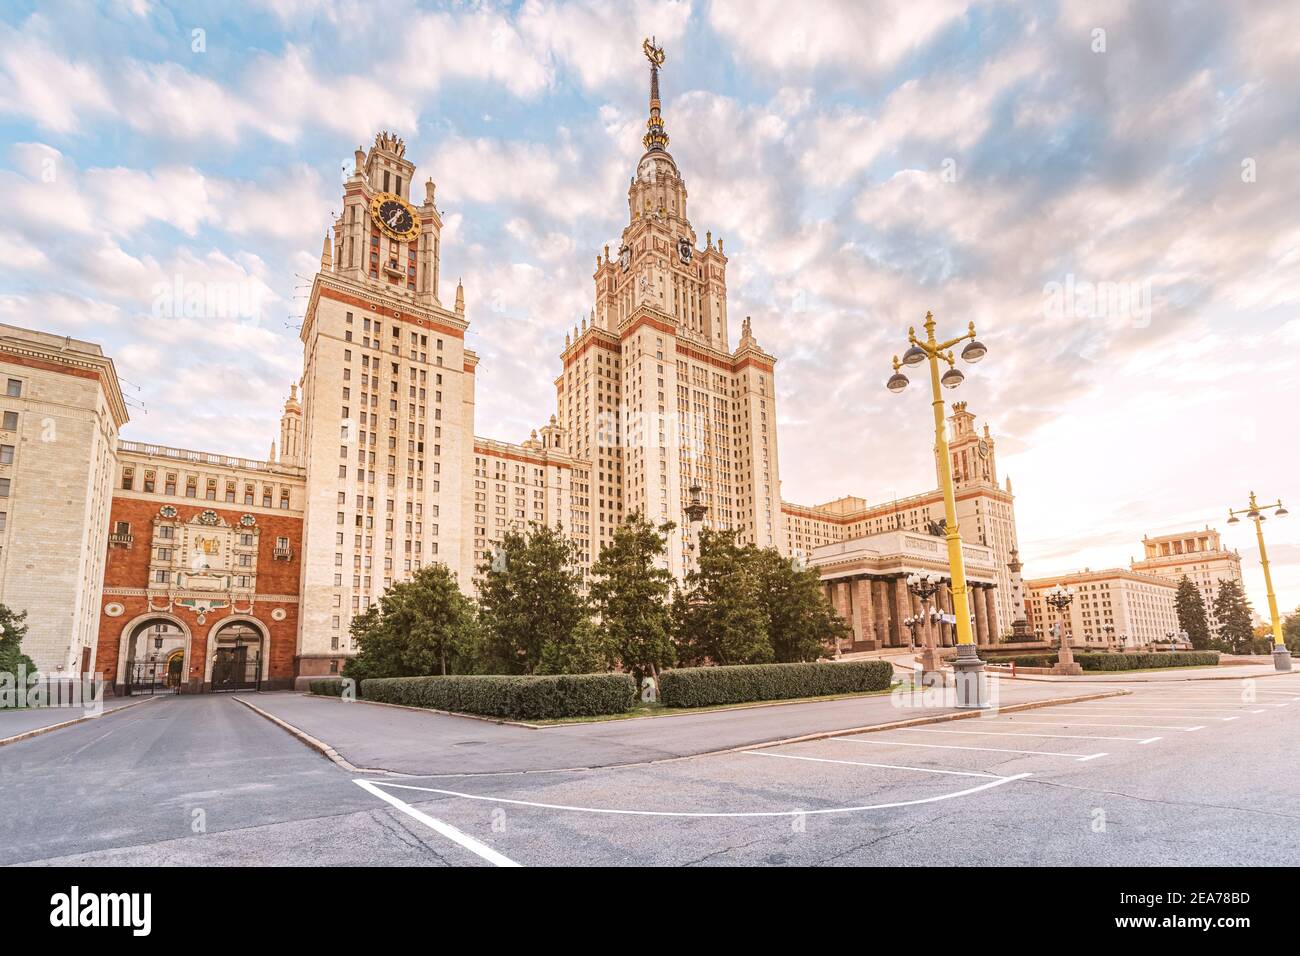 El majestuoso edificio de la Universidad Estatal Lomonosov de Moscú. Arquitectura al estilo del Imperio estalinista. Foto de stock